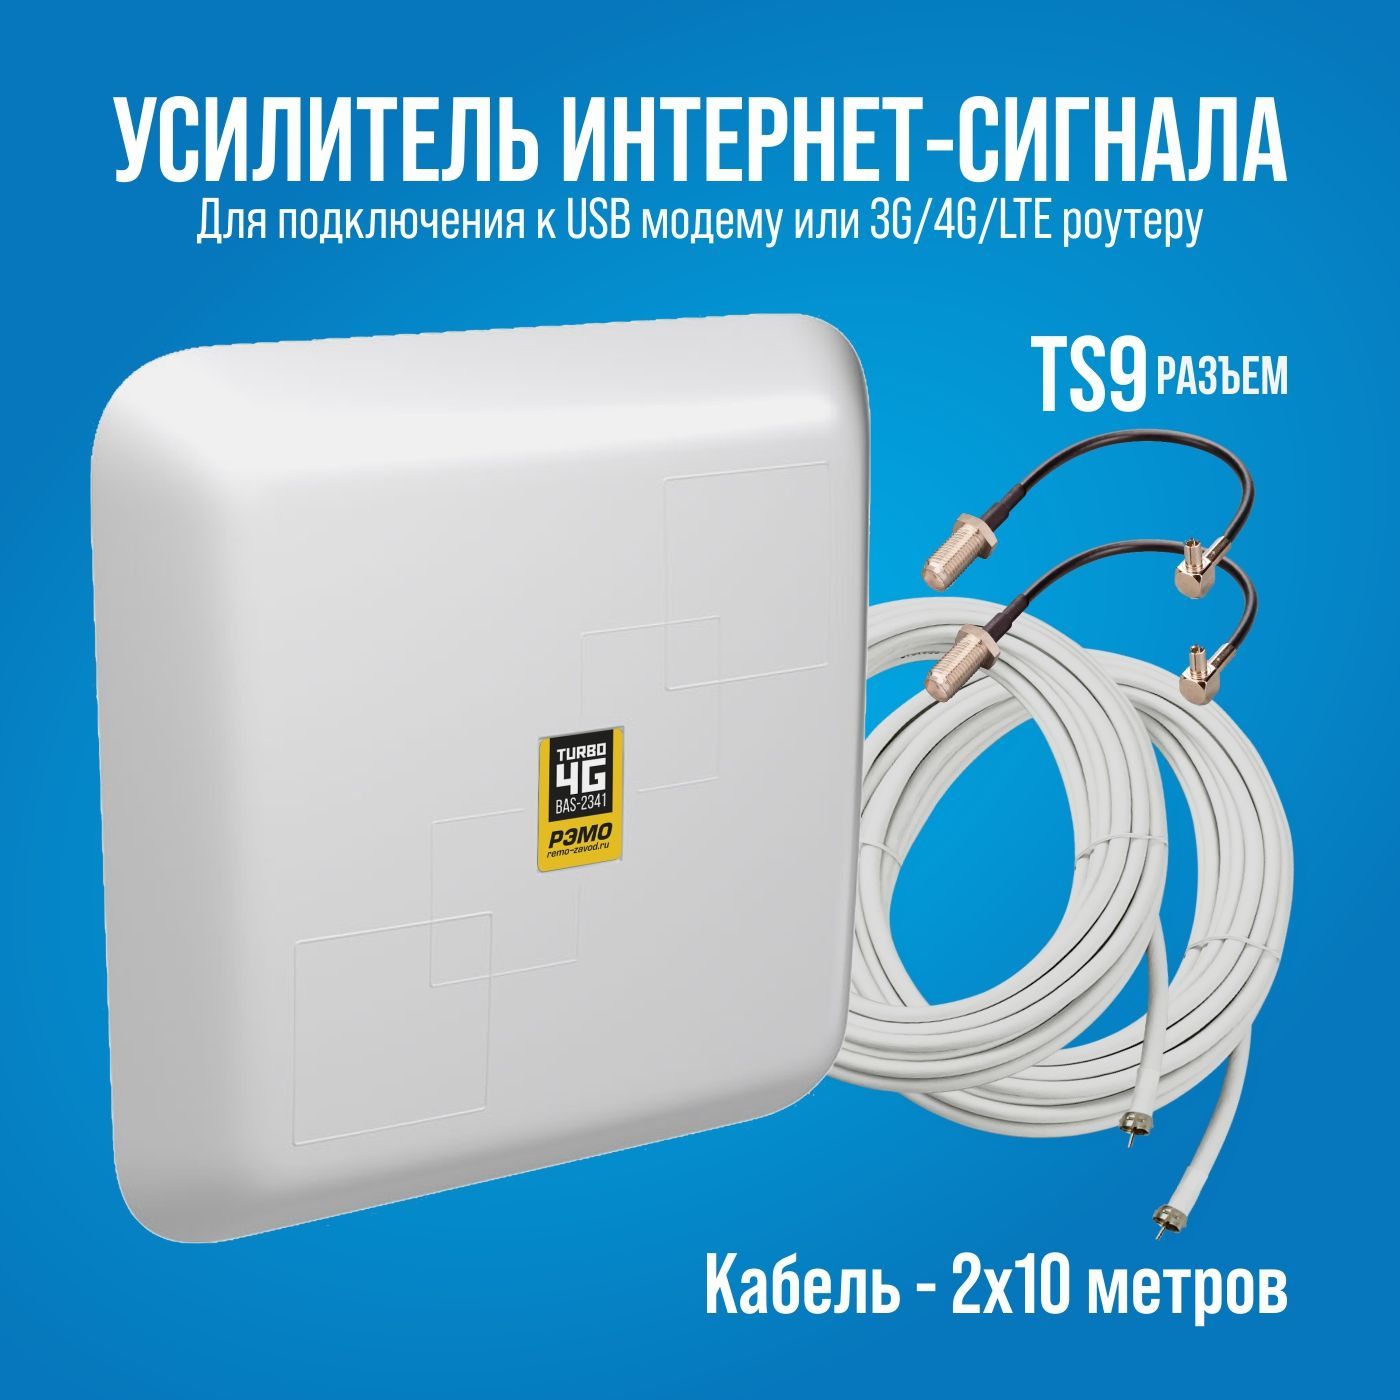 Самодельная 4G антенна в домашних условиях — Харченко, MiMO и дисковая